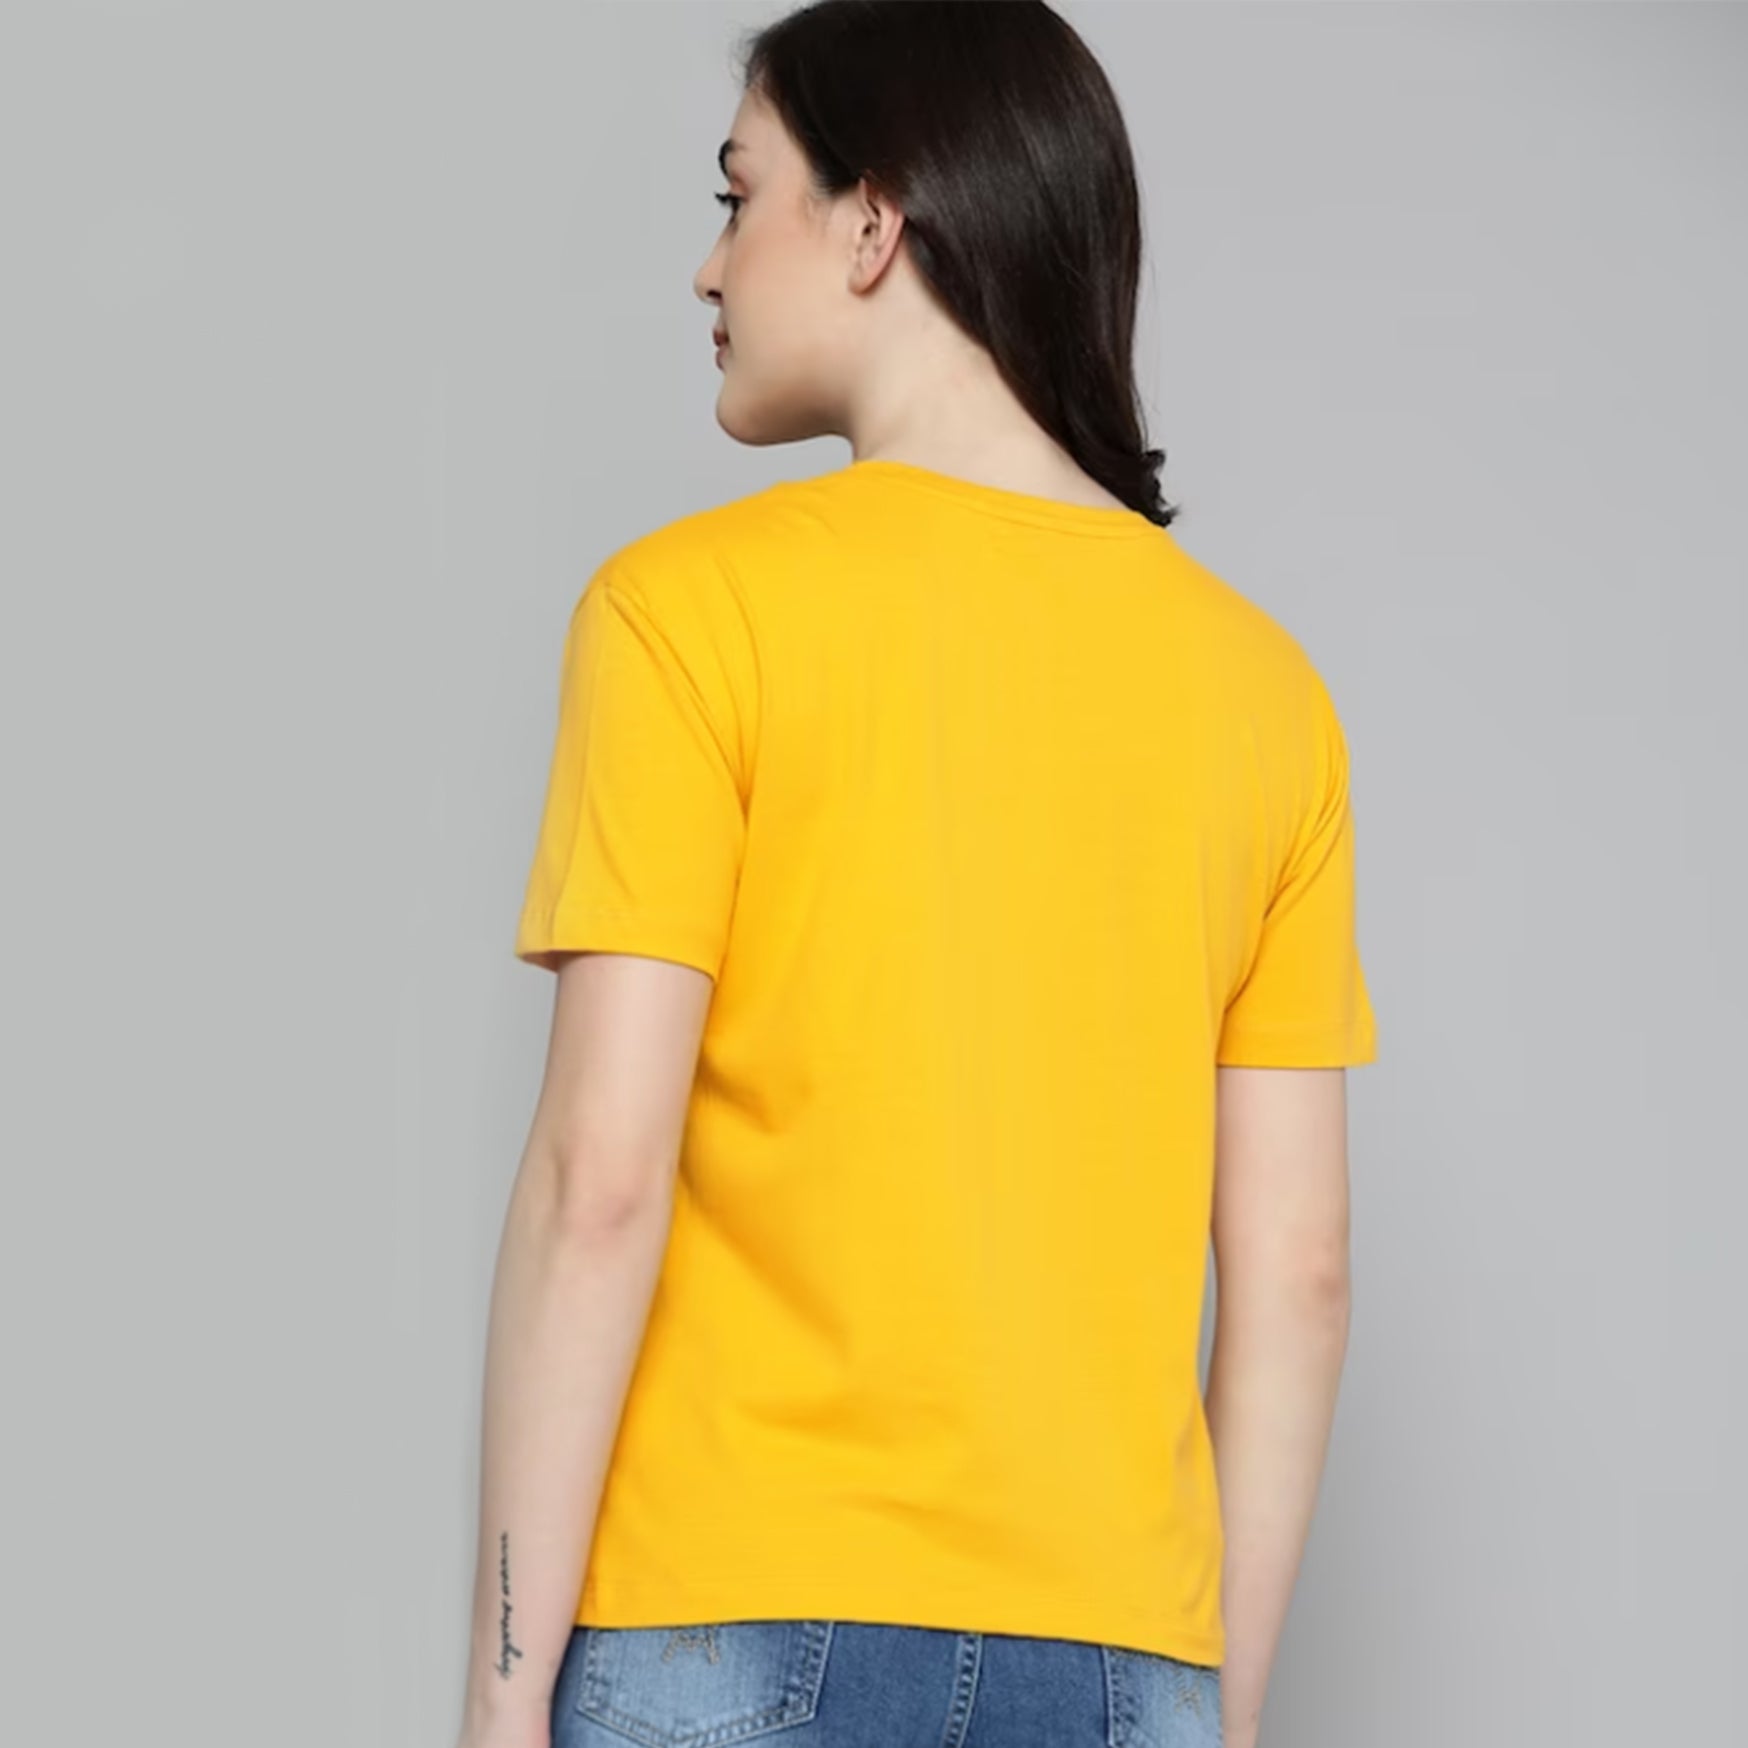 Women Yellow & Navy Blue Printed Round Neck T-shirt